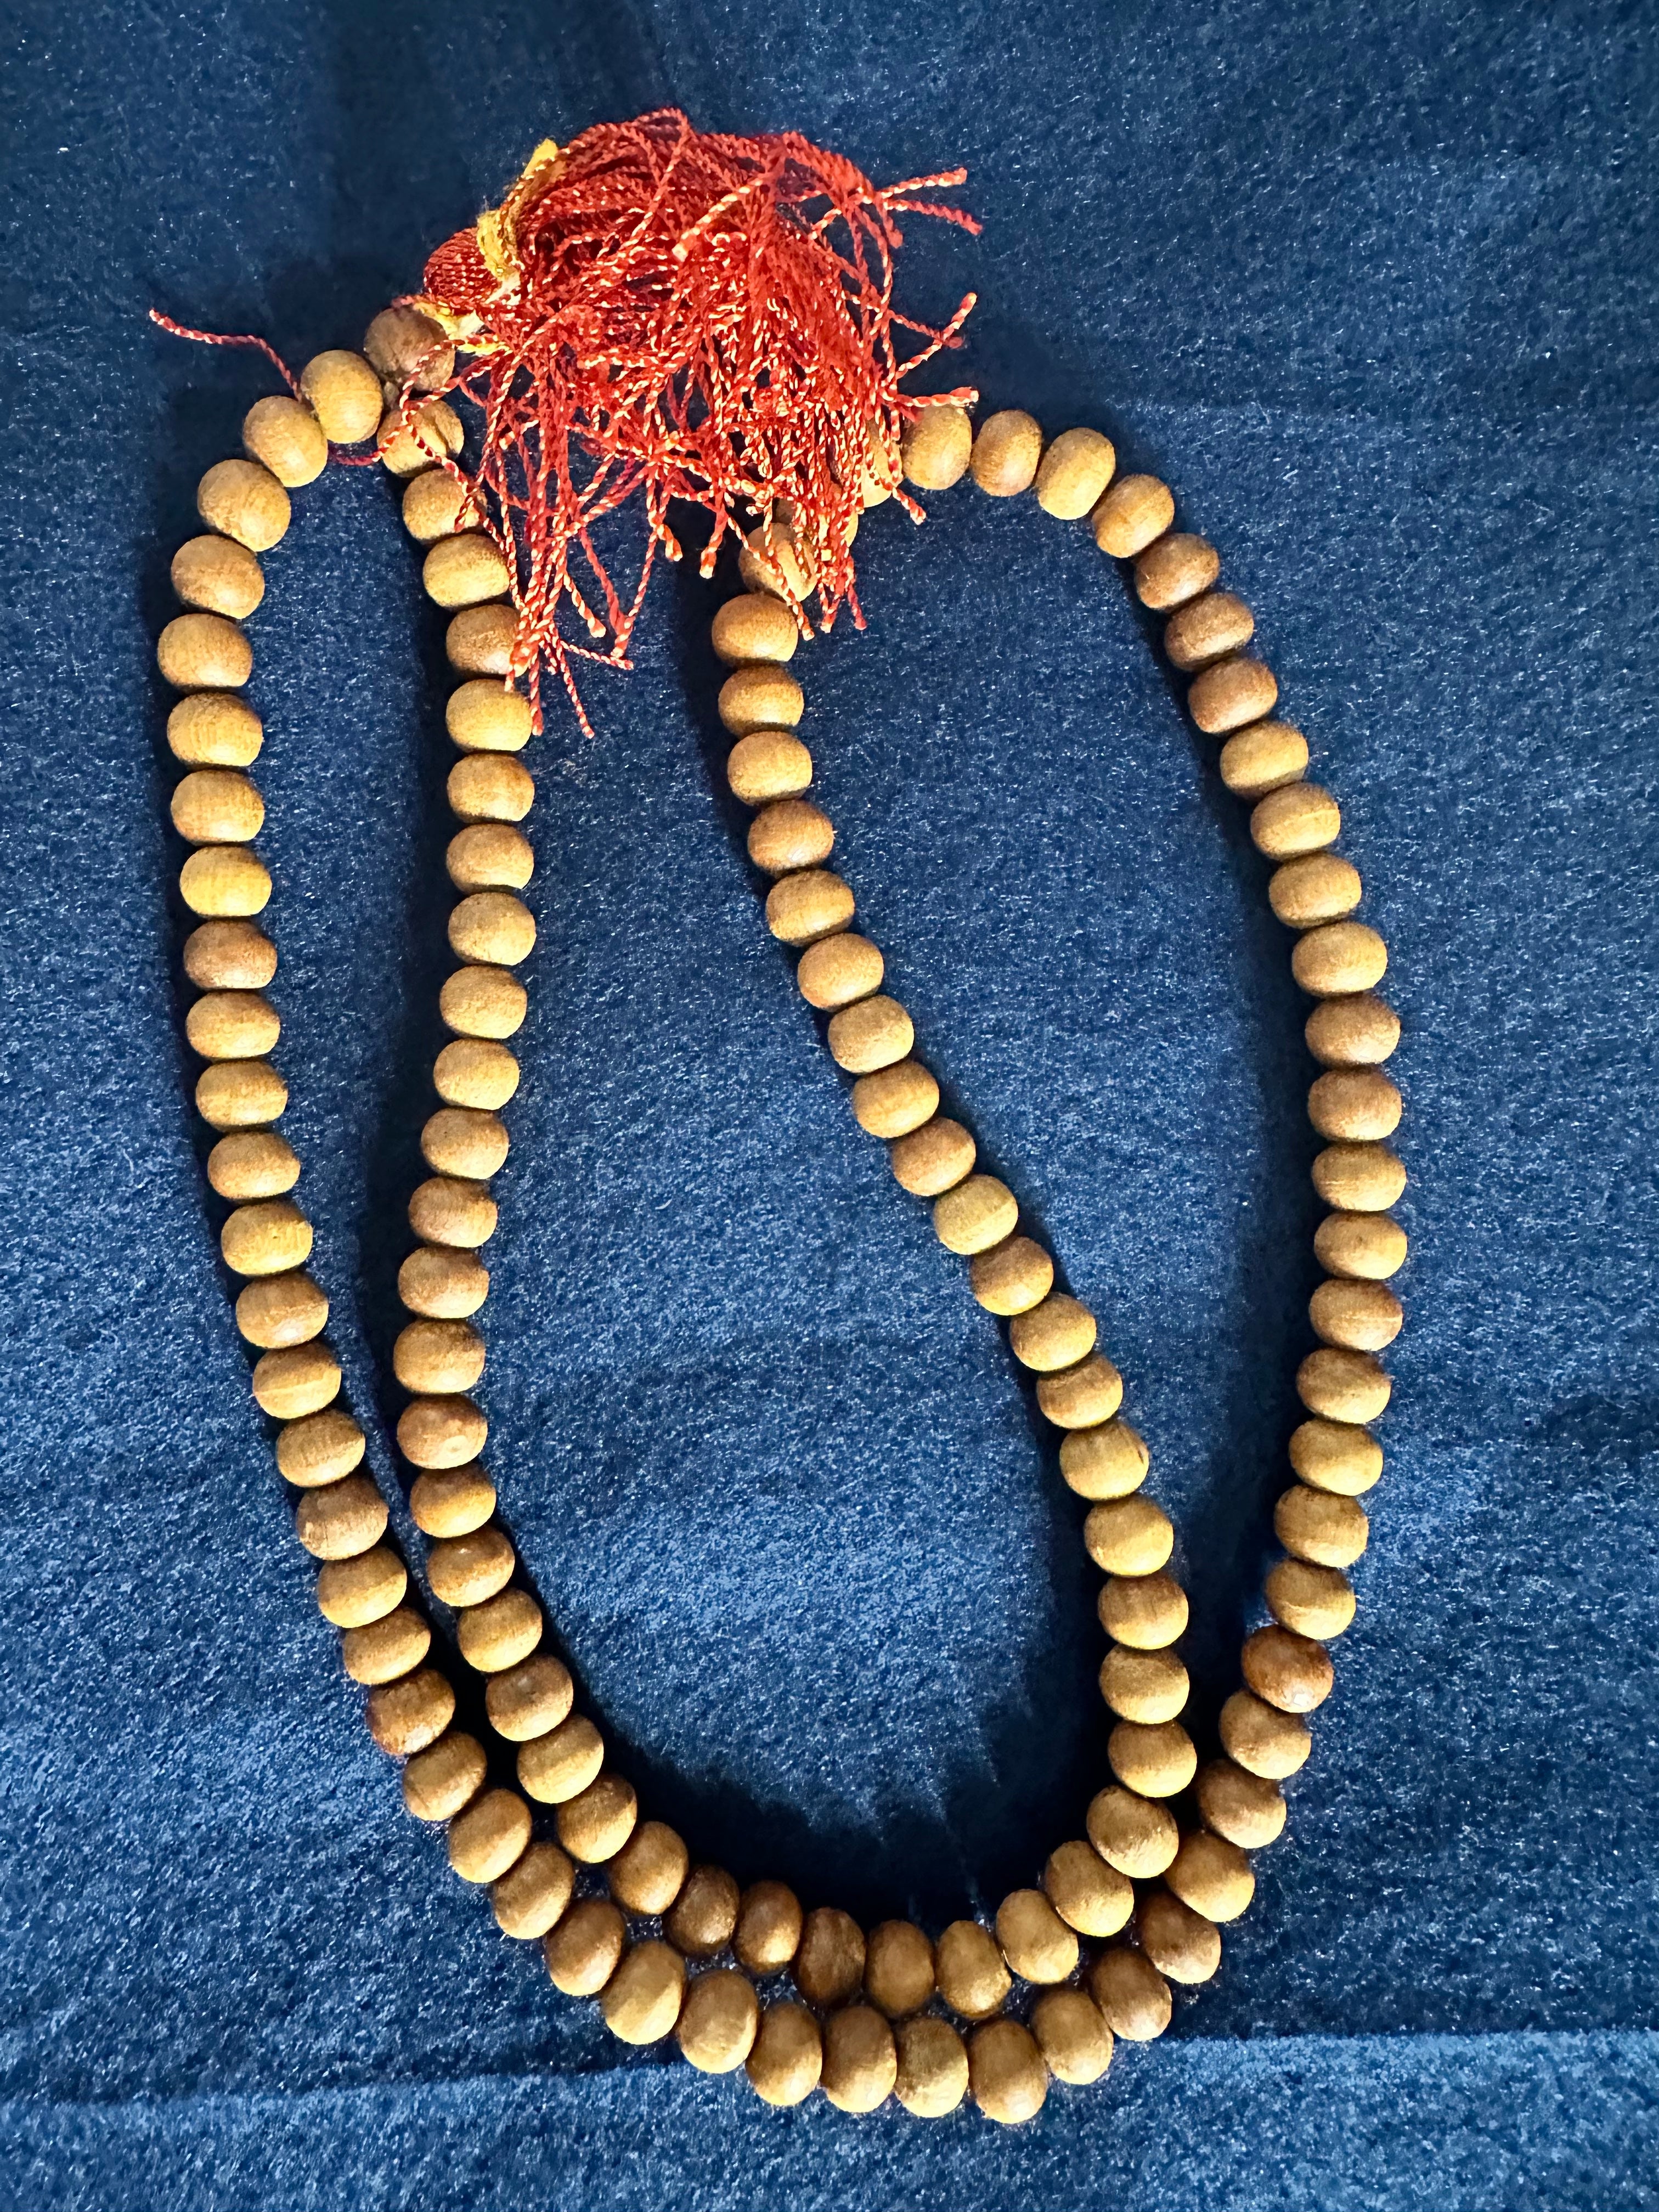 Sandalwood Mala (108 Beads on Cotton Thread) - The Amma Store